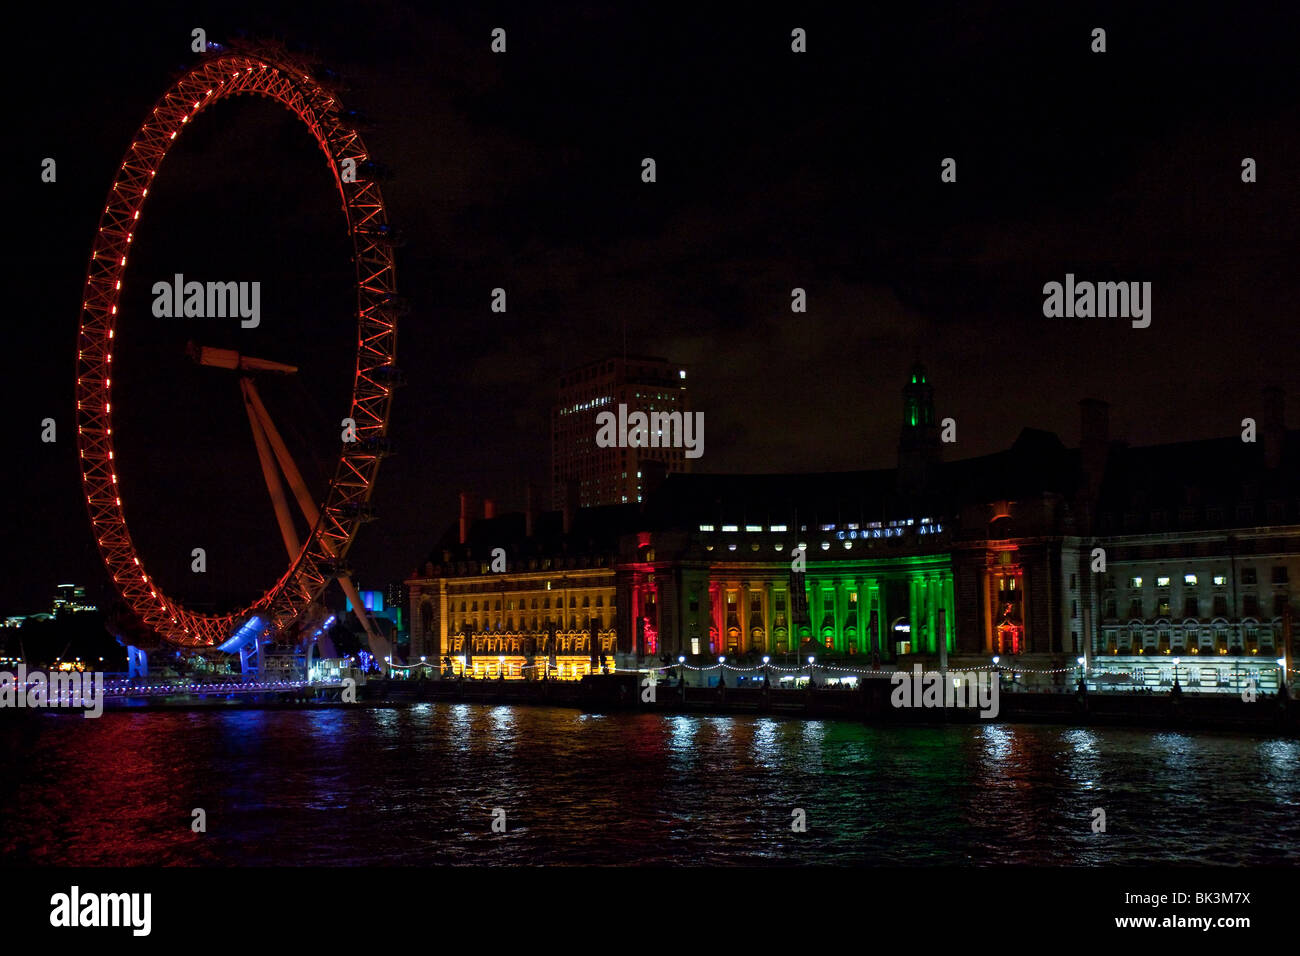 London Eye by night, UK Stock Photo